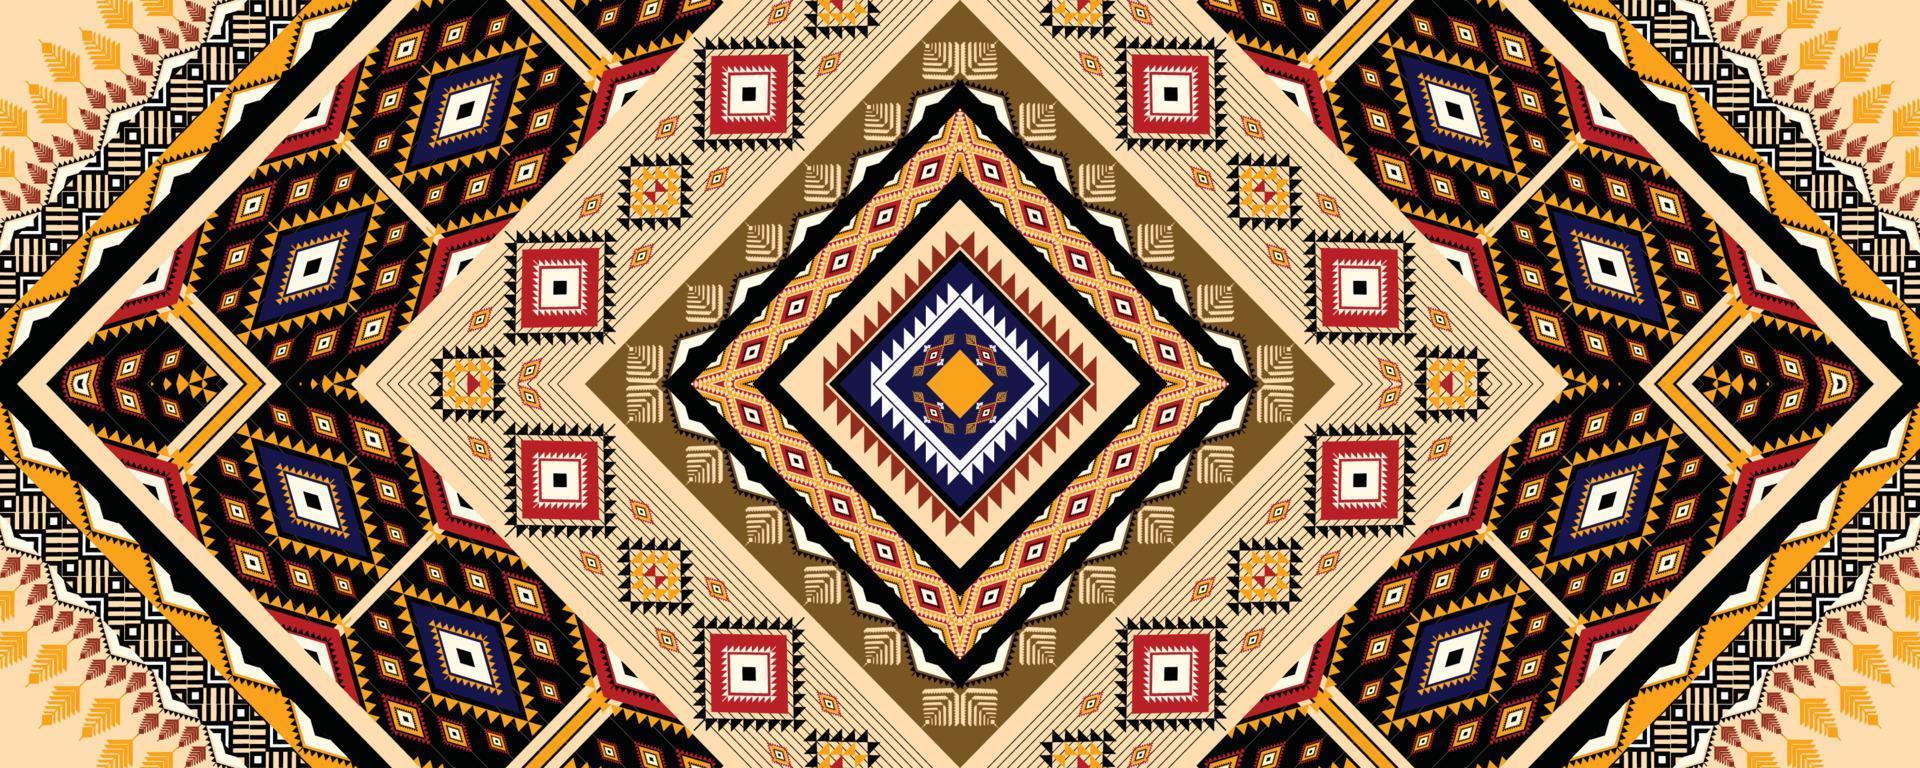 étnico geométrico americano, ocidental, asteca motivo padrão estilo design de padrão sem emenda para tecido, cortina, fundo, sarongue, papel de parede, roupas, embrulho, batik, telha, ilustração interior.vector. vetor